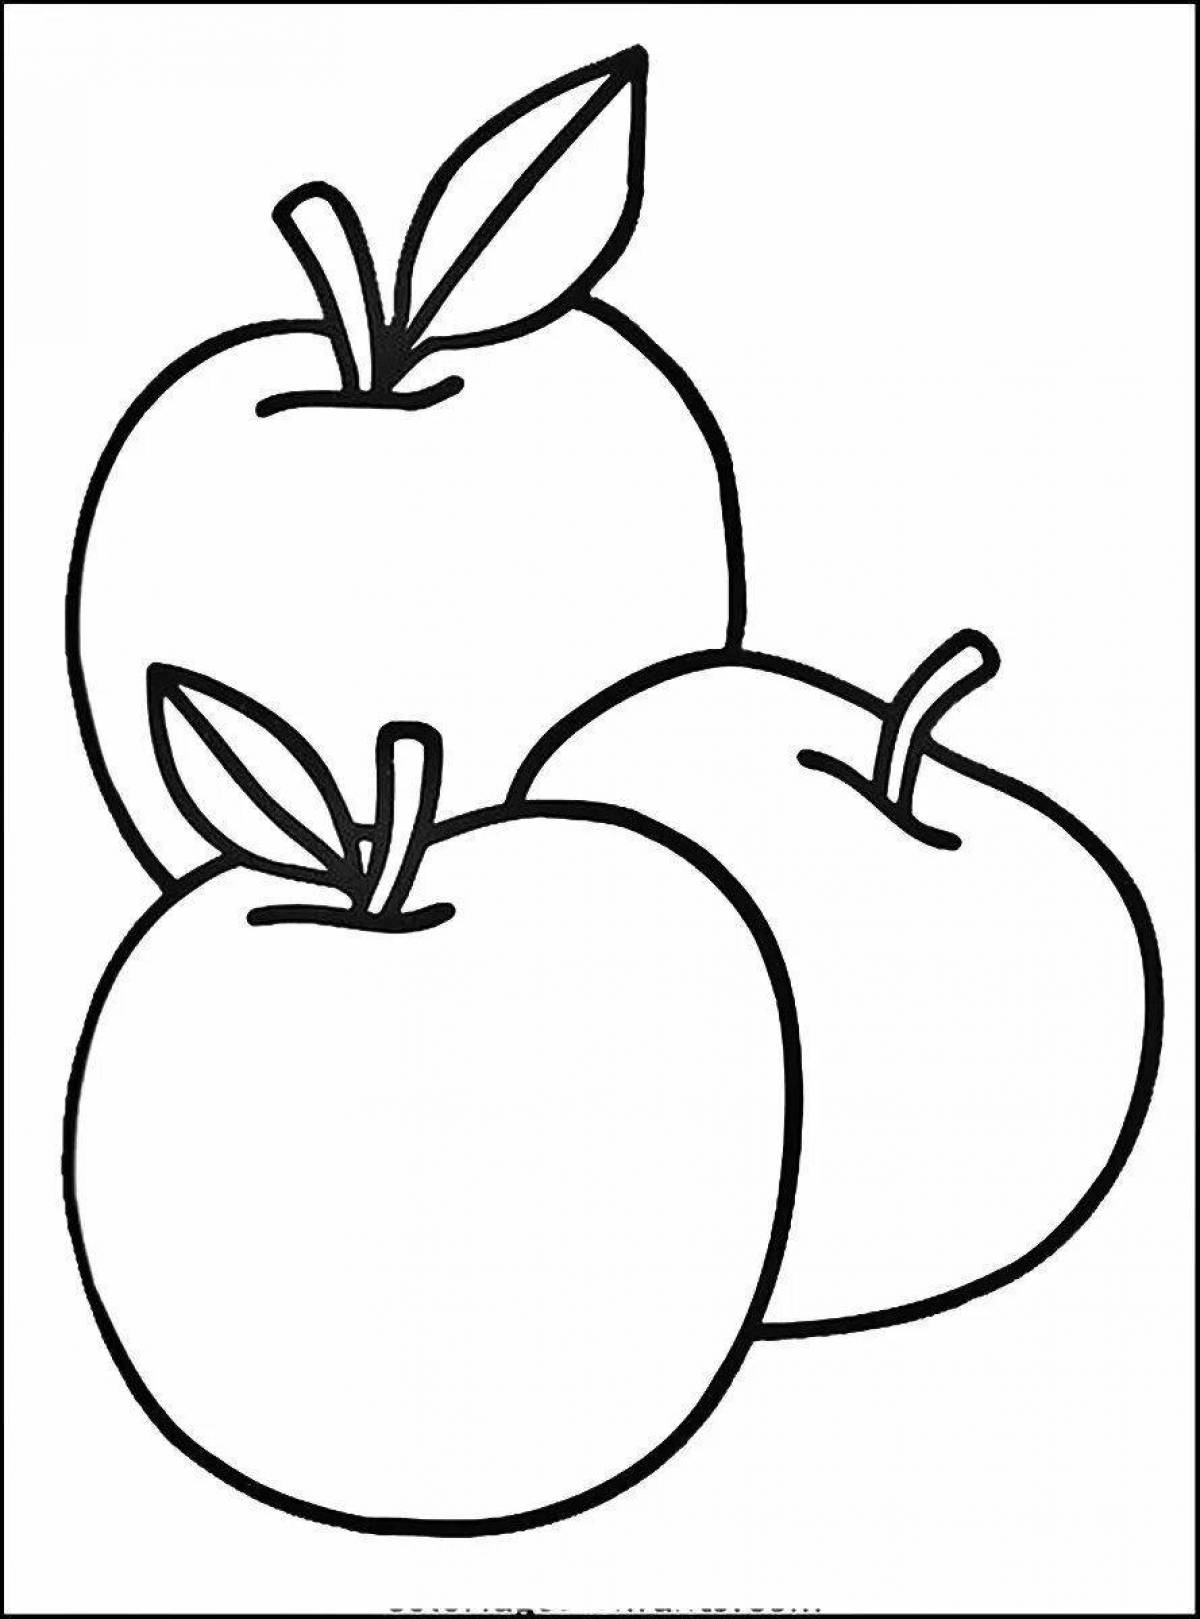 Креативное рисование яблок для детей